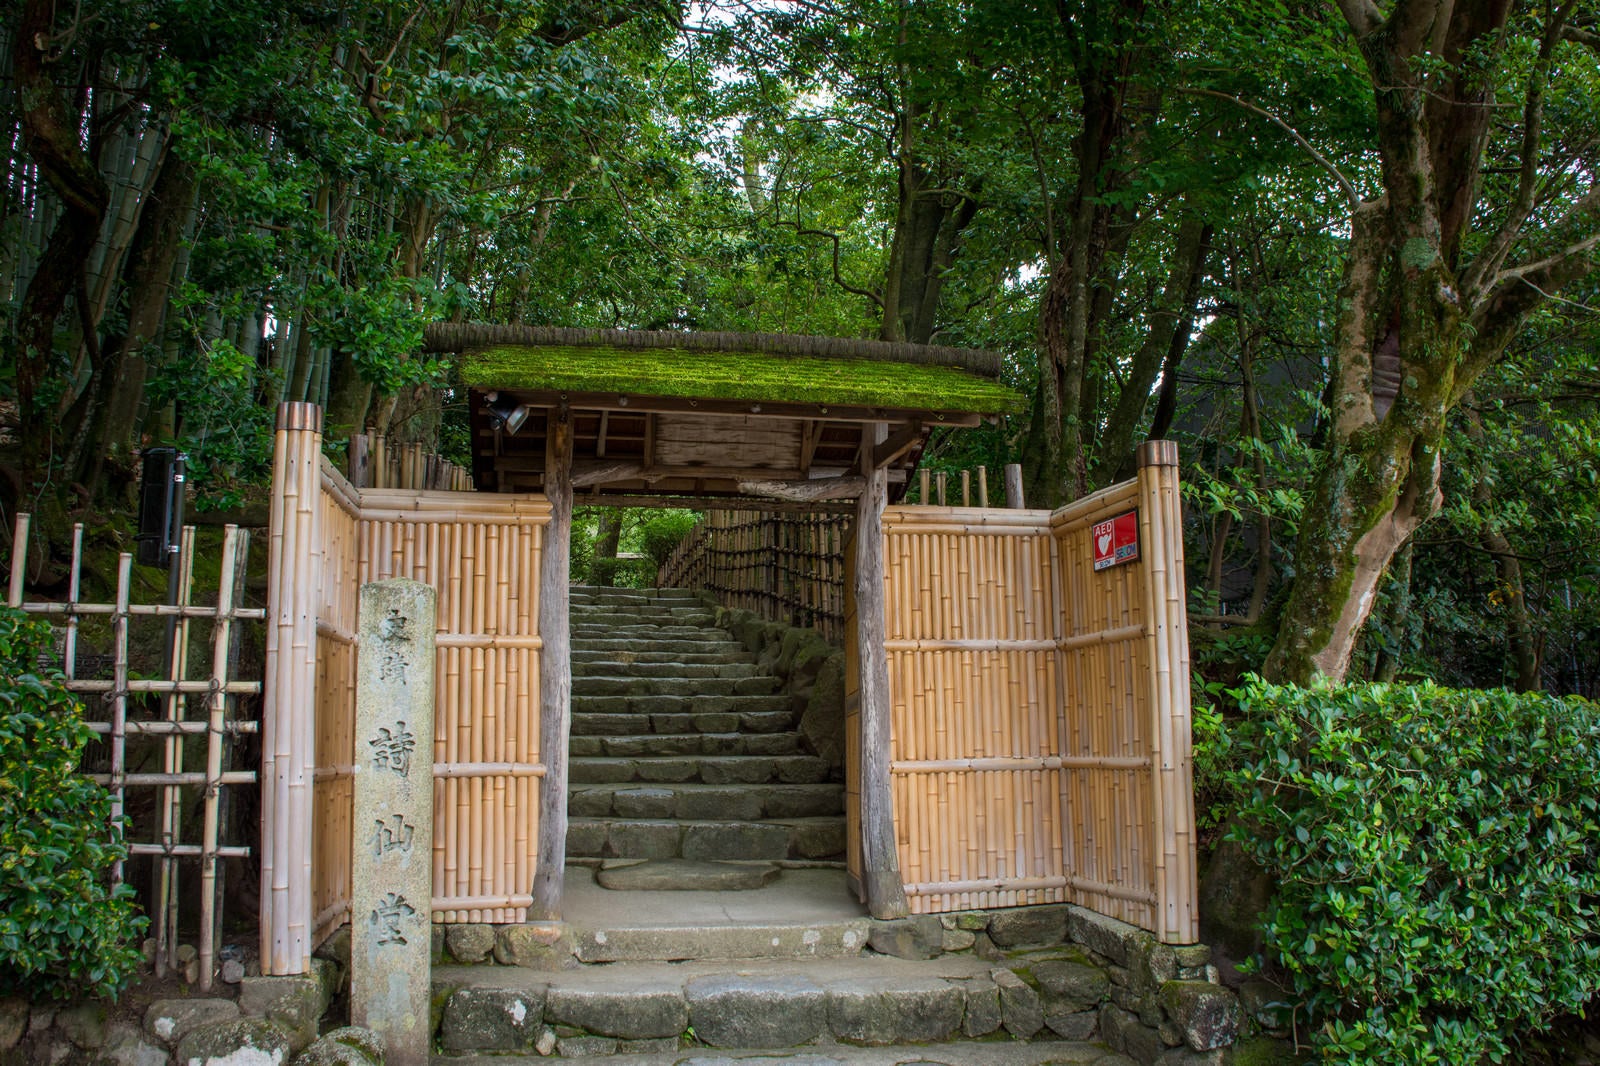 「竹垣と苔むした屋根が迎えてくれる京都詩仙堂入り口」の写真